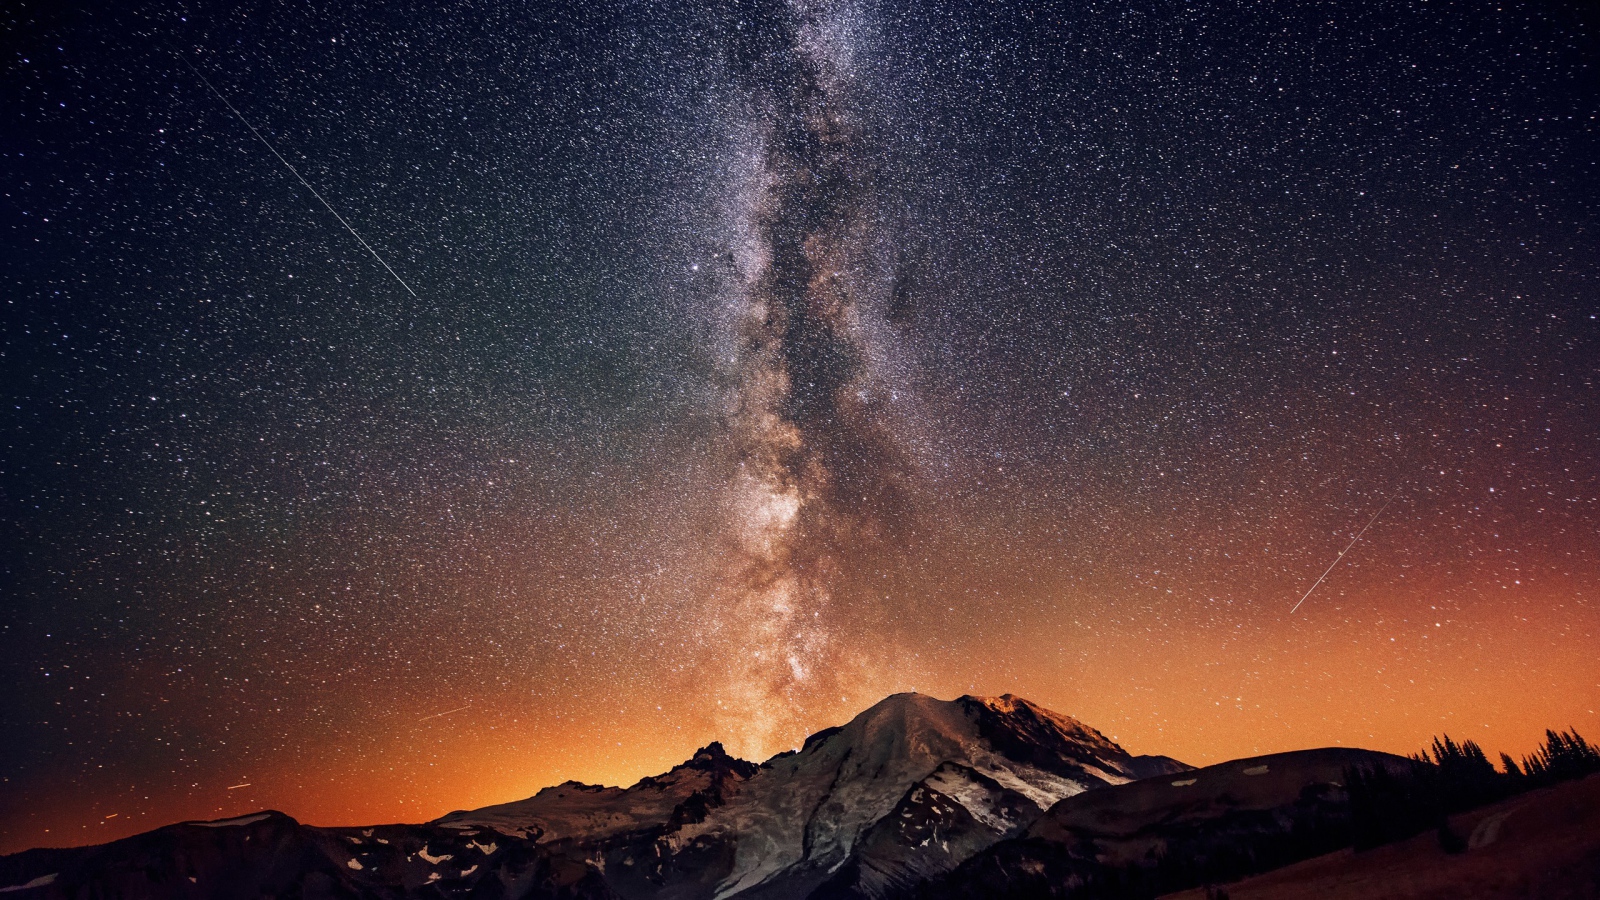 Млечный путь в звездном небе над горой 